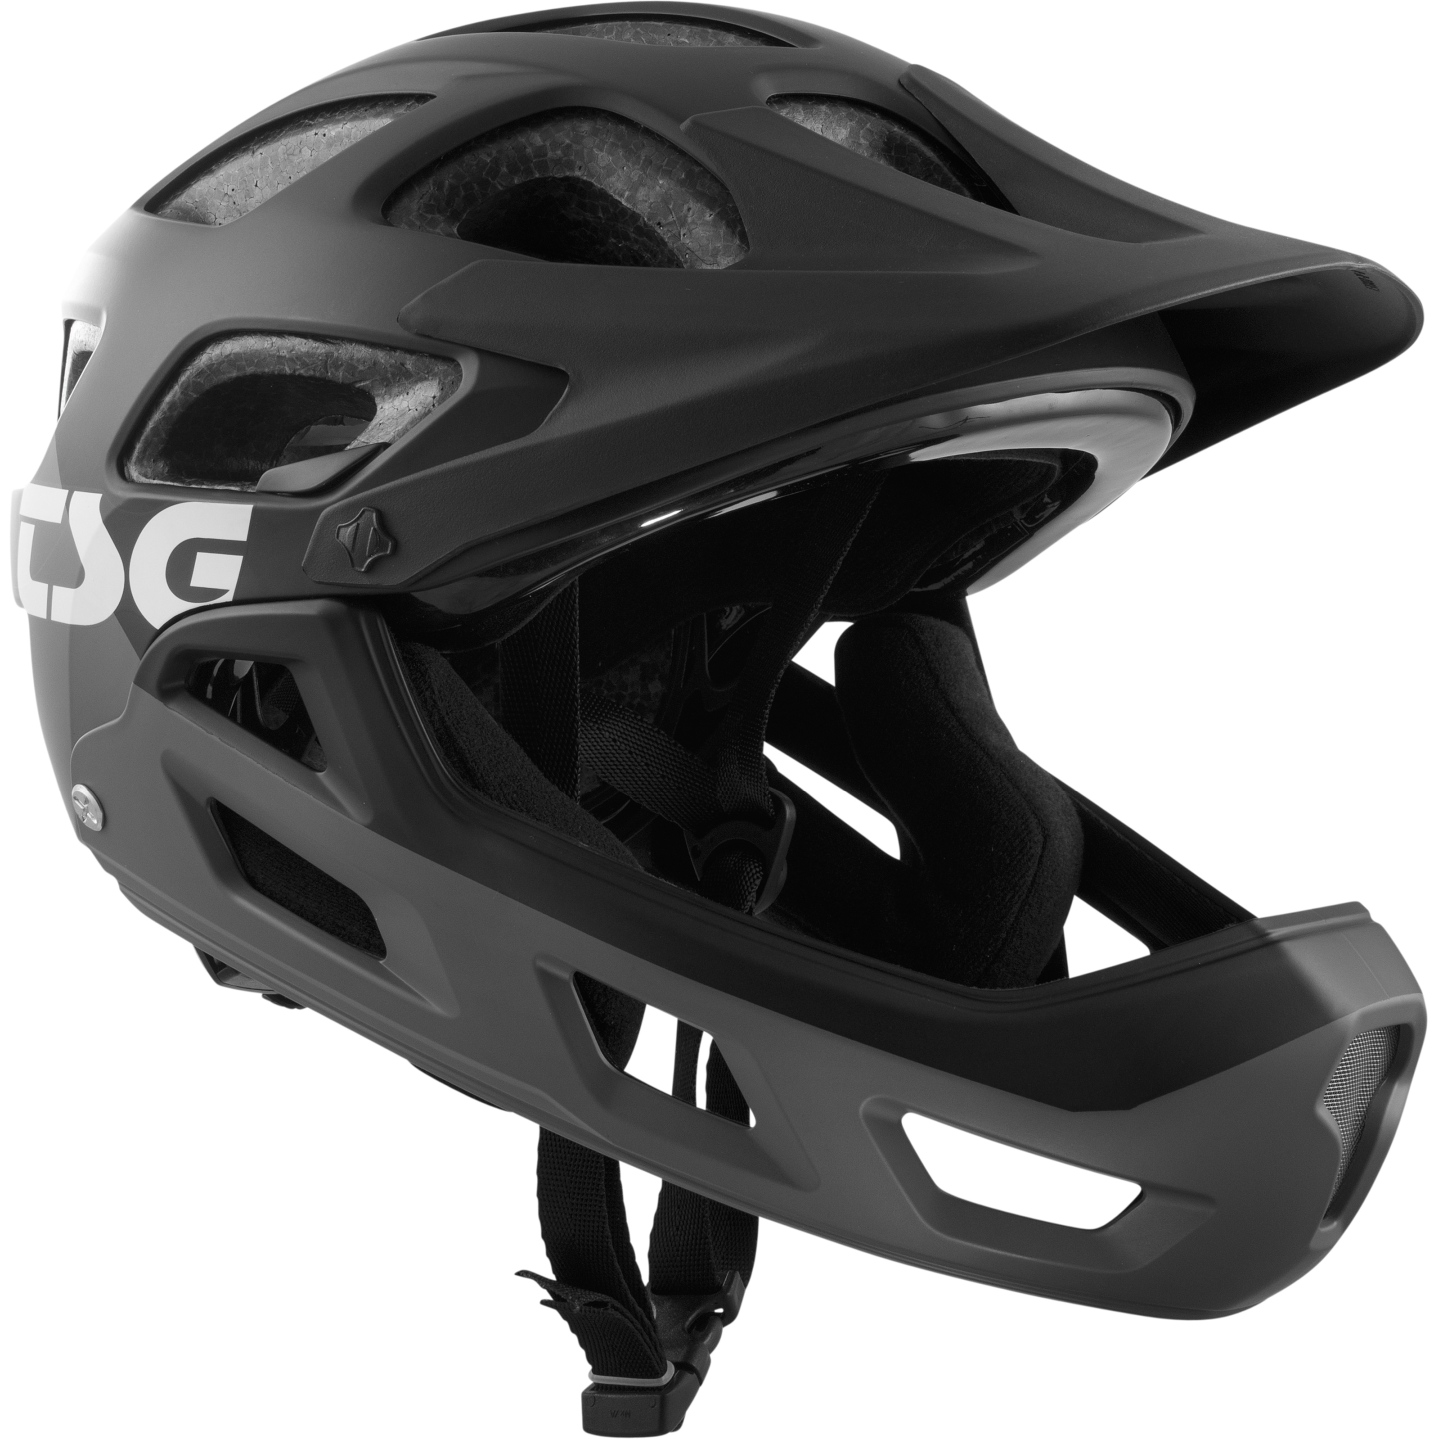 Productfoto van TSG Seek Youth FR Graphic Design Helmet - flow grey/black